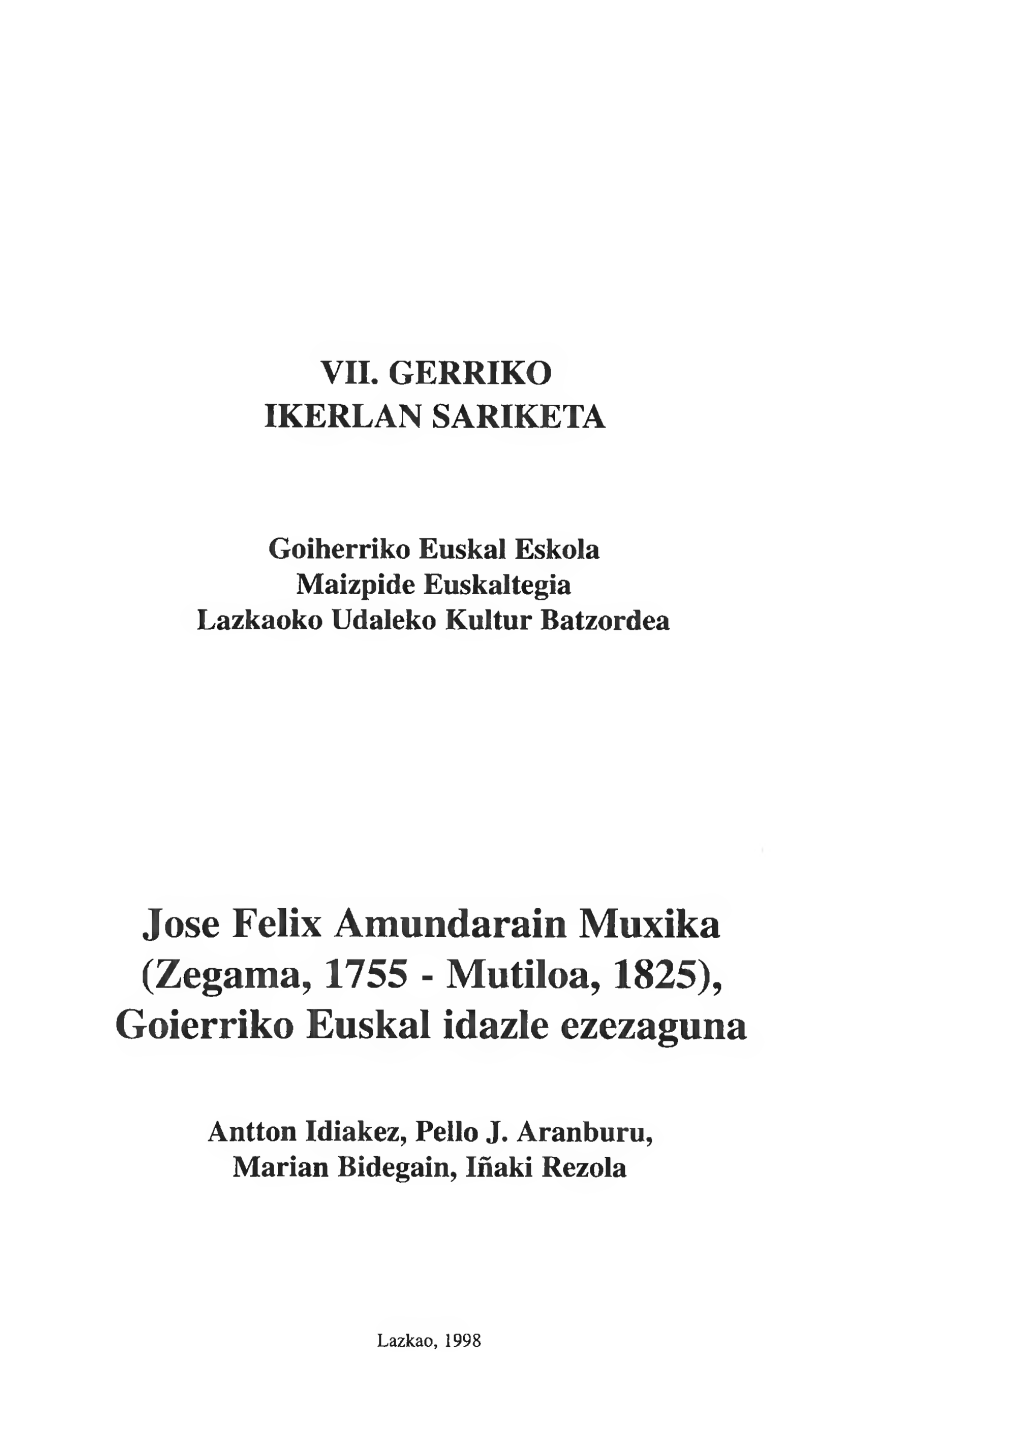 Jose Felix Amundarain Muxika (Zegama, 1755 - Mutiloa, 1825), Goierriko Euskal Idazle Ezezaguna